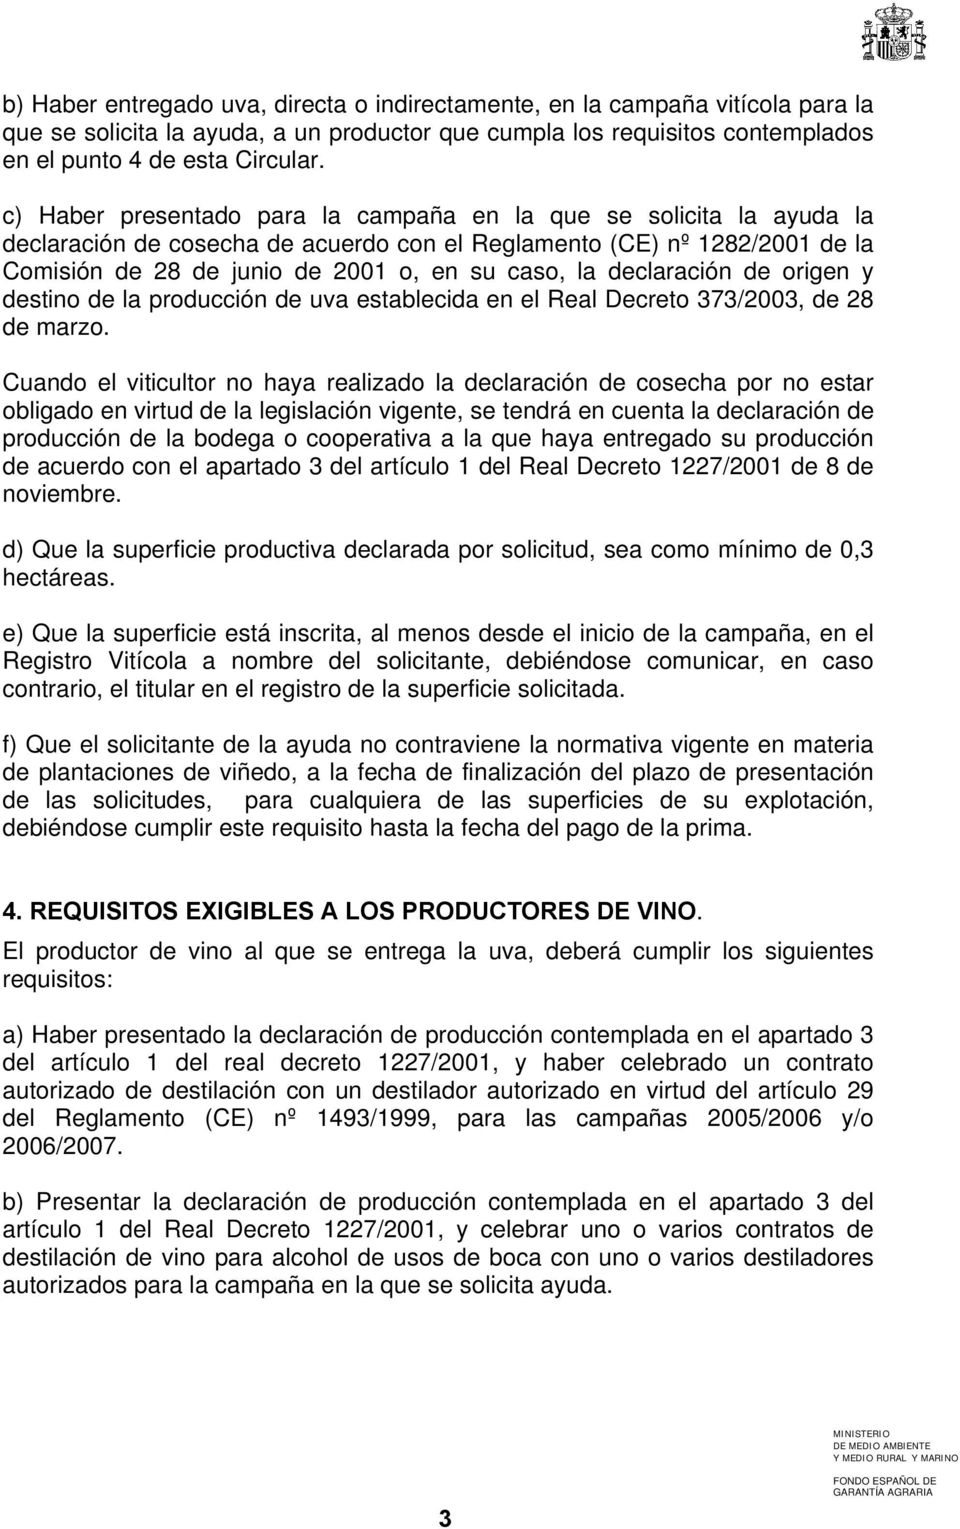 declaración de origen y destino de la producción de uva establecida en el Real Decreto 373/2003, de 28 de marzo.